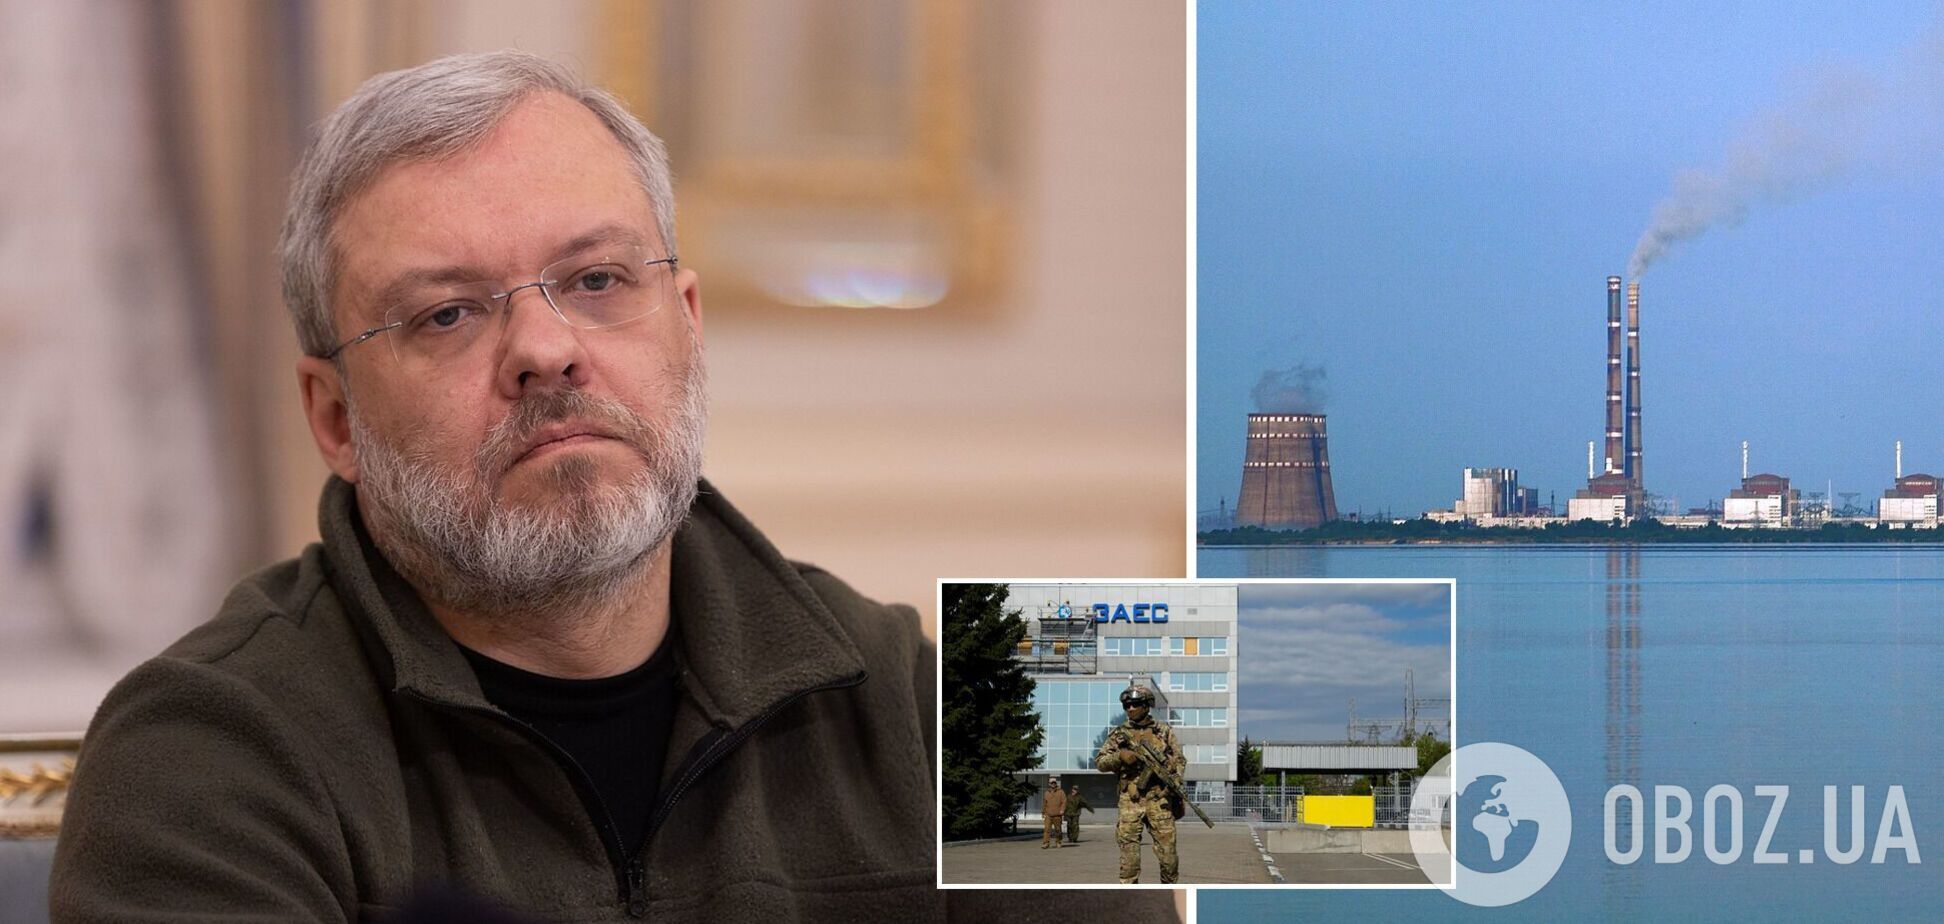 ЗАЭС была в шаге от аварии несколько раз: министр энергетики Украины призвал остановить Россию